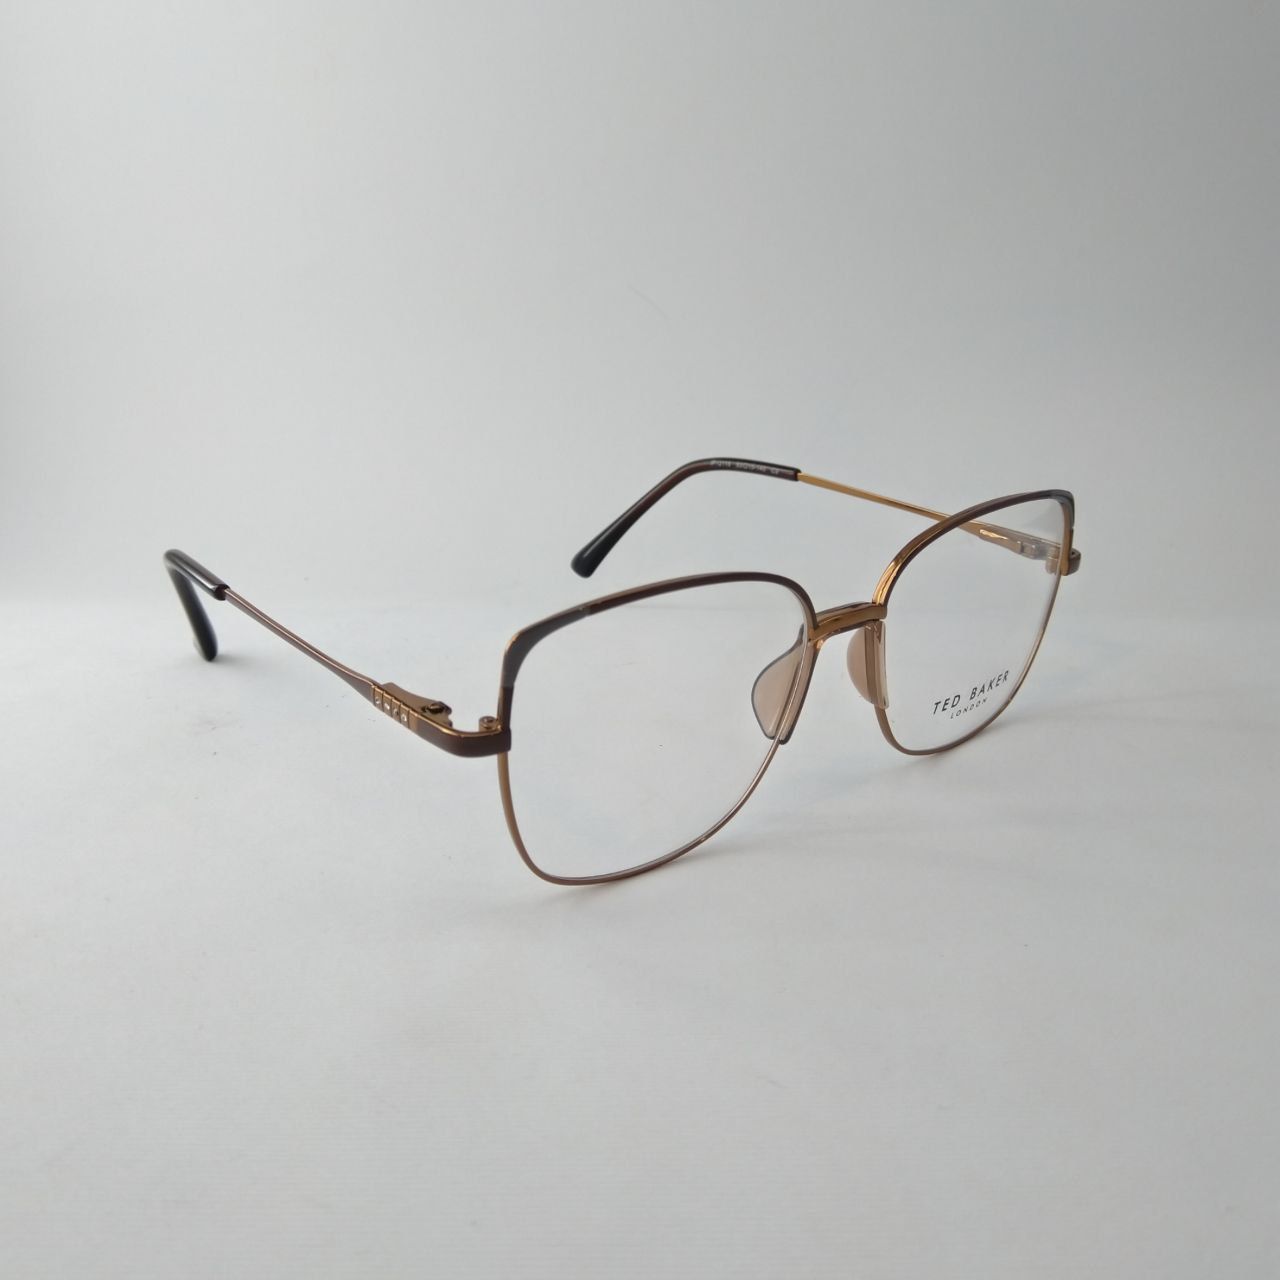 فریم عینک طبی زنانه تد بیکر مدل IP12118 -  - 2